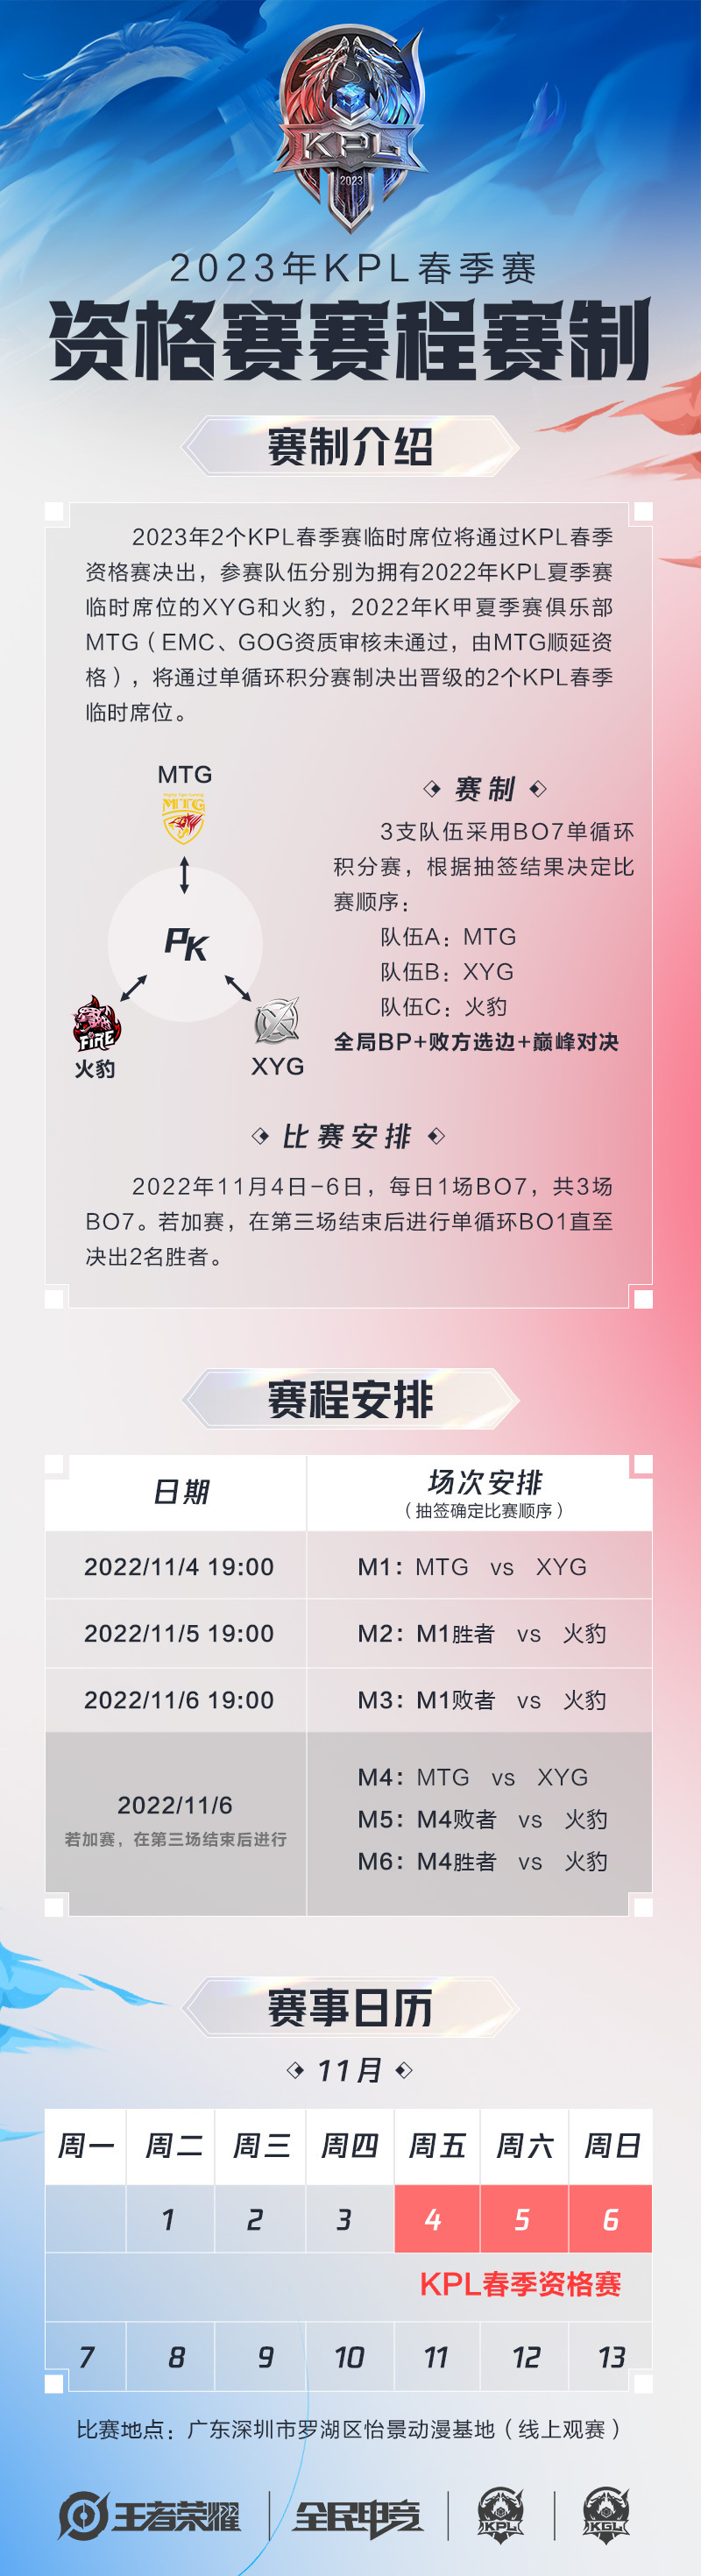 王者荣耀2023KPL春季赛资格赛什么时候开始-2023KPL春季赛资格赛介绍